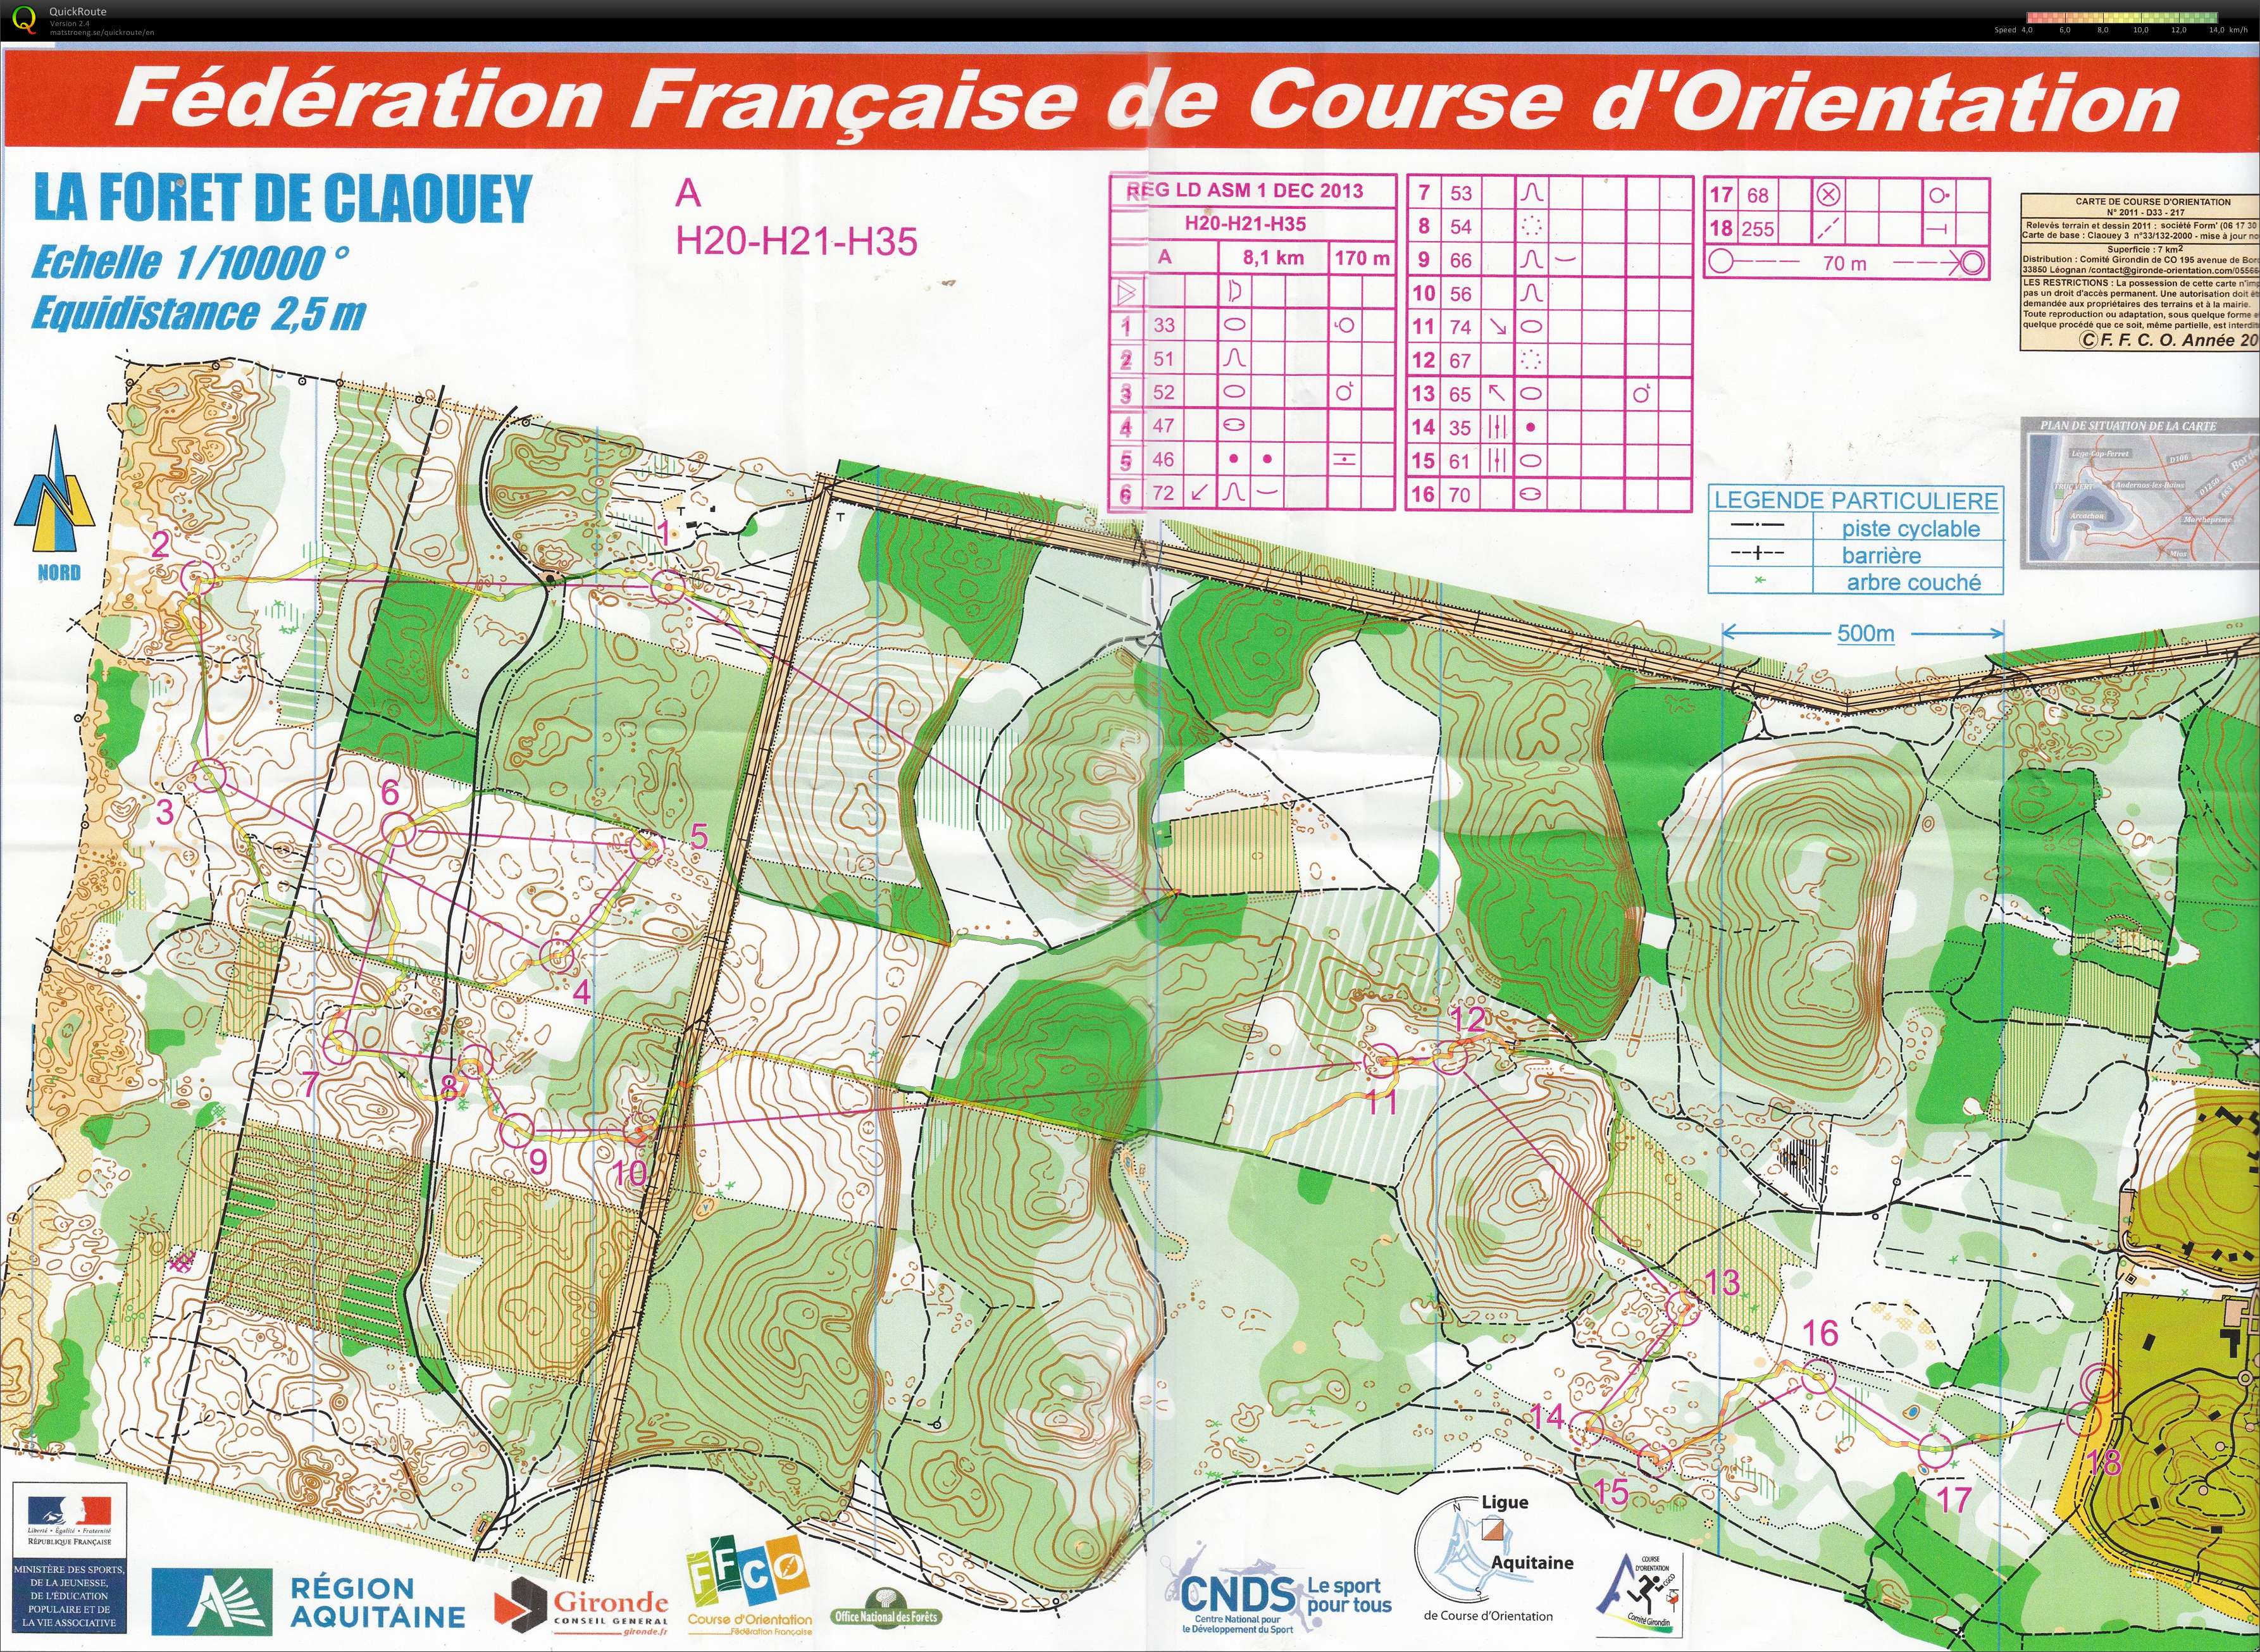 Régionale LD Aquitaine (01.12.2013)